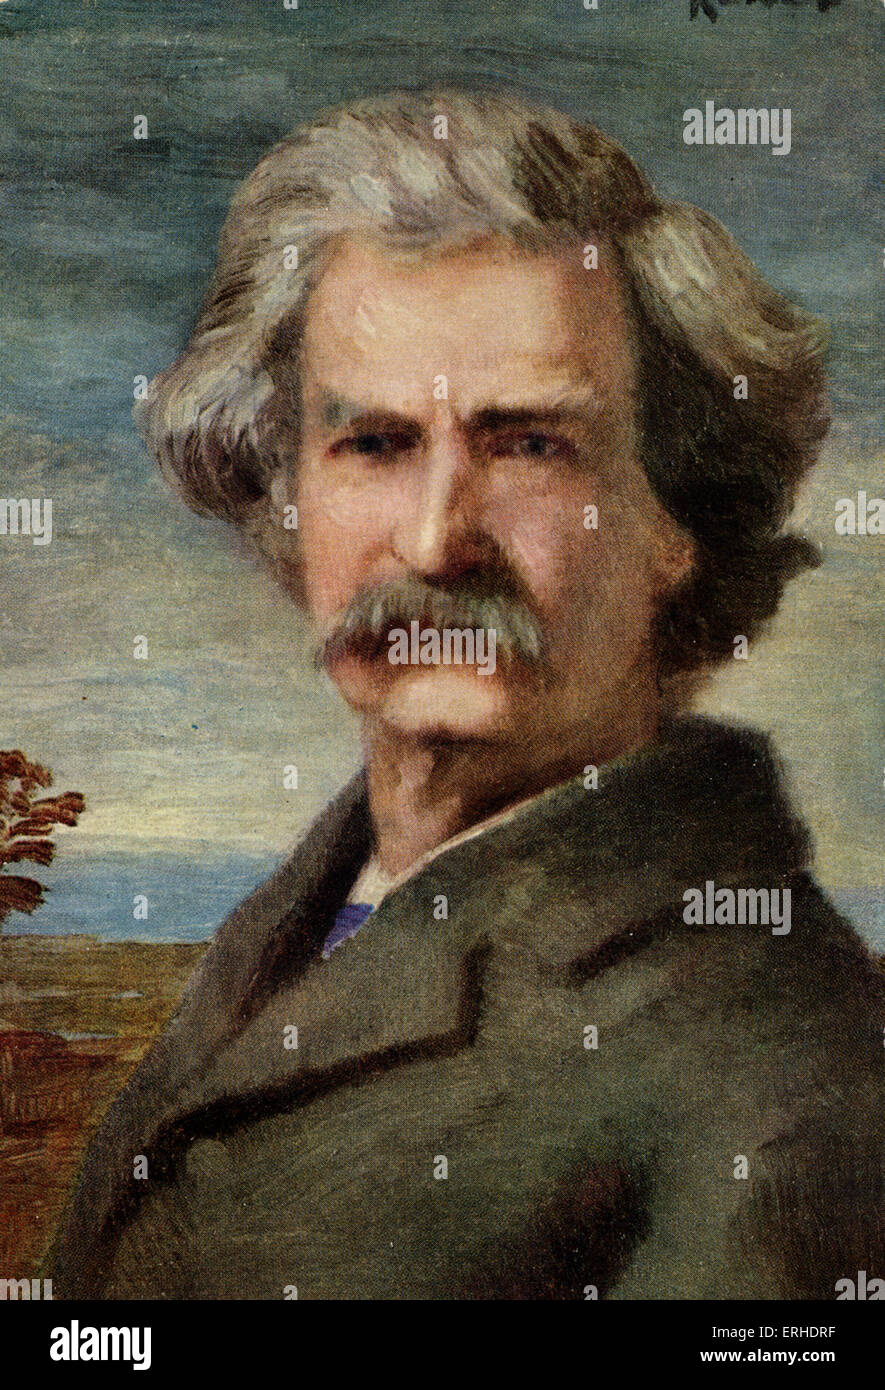 Mark Twain - portrait. L'écrivain américain, satiriste et romancier. 1835 - 1910. Version couleur de carte postale Banque D'Images